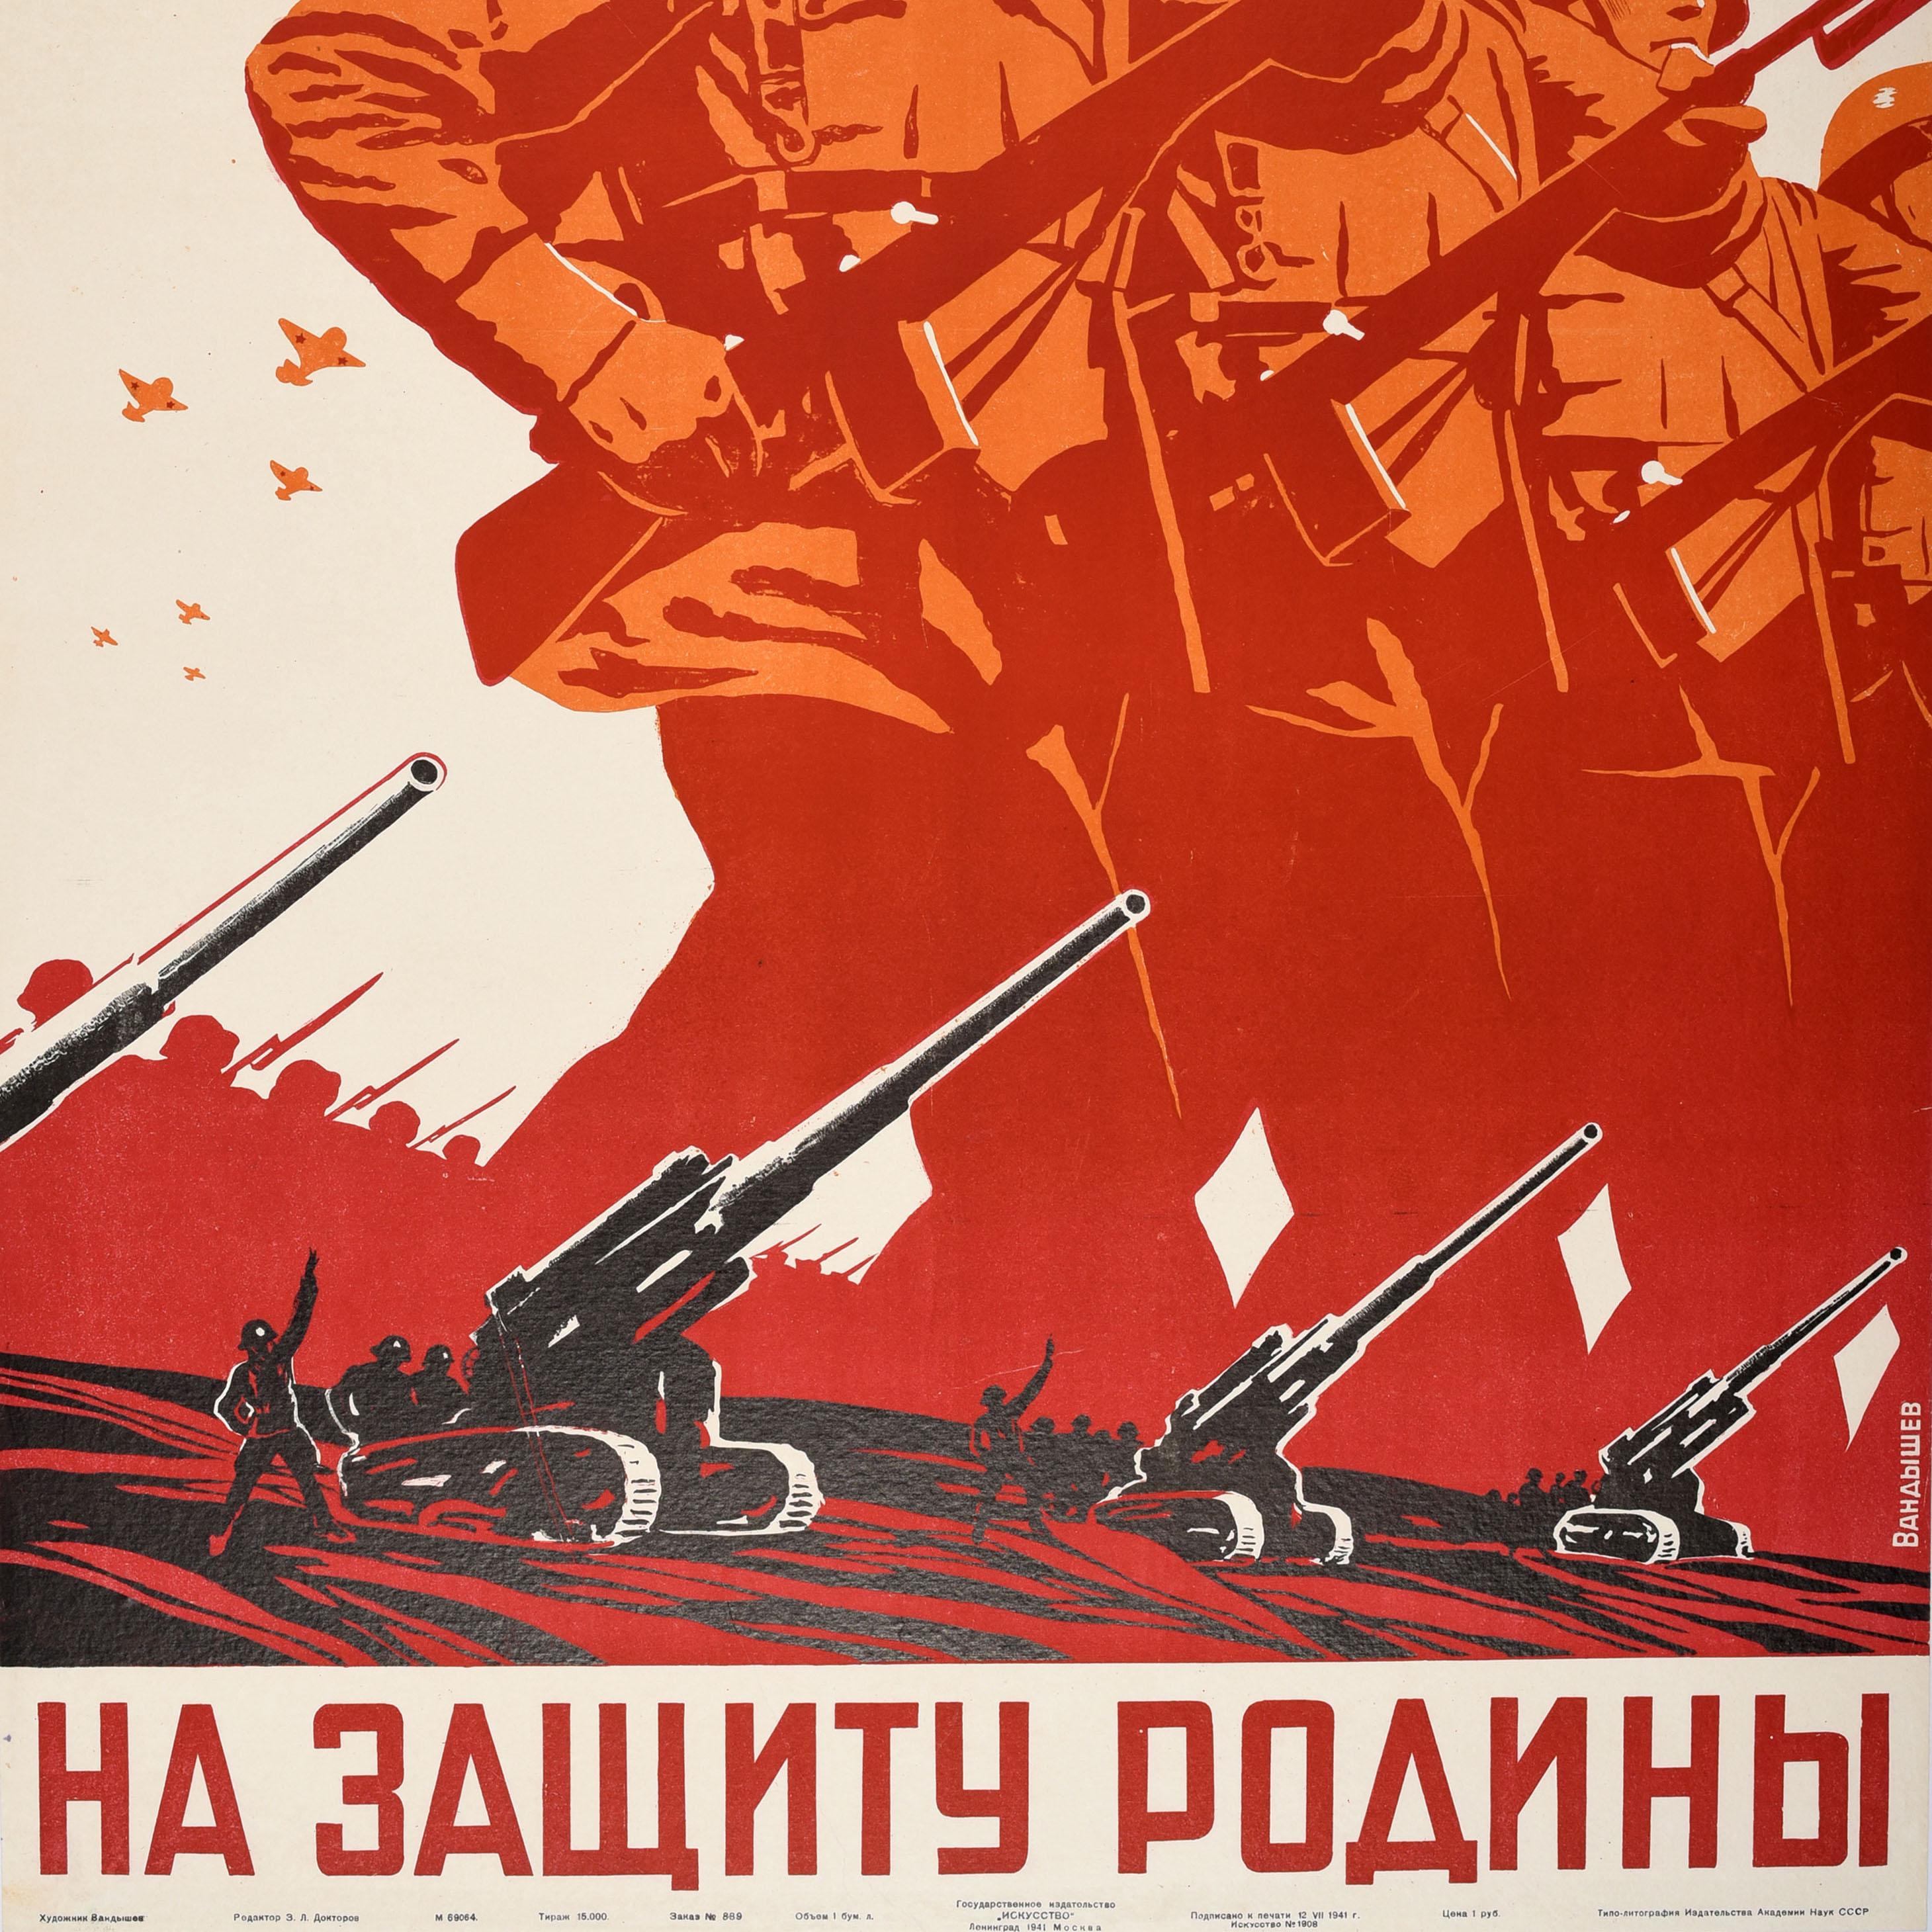 Originales sowjetisches Propagandaplakat aus dem Zweiten Weltkrieg - Zur Verteidigung des Vaterlandes / На Защиту Родины - mit einem dynamischen Motiv, das Soldaten der Roten Armee in Uniform mit roten UdSSR-Sternen auf den Helmen zeigt, die mit